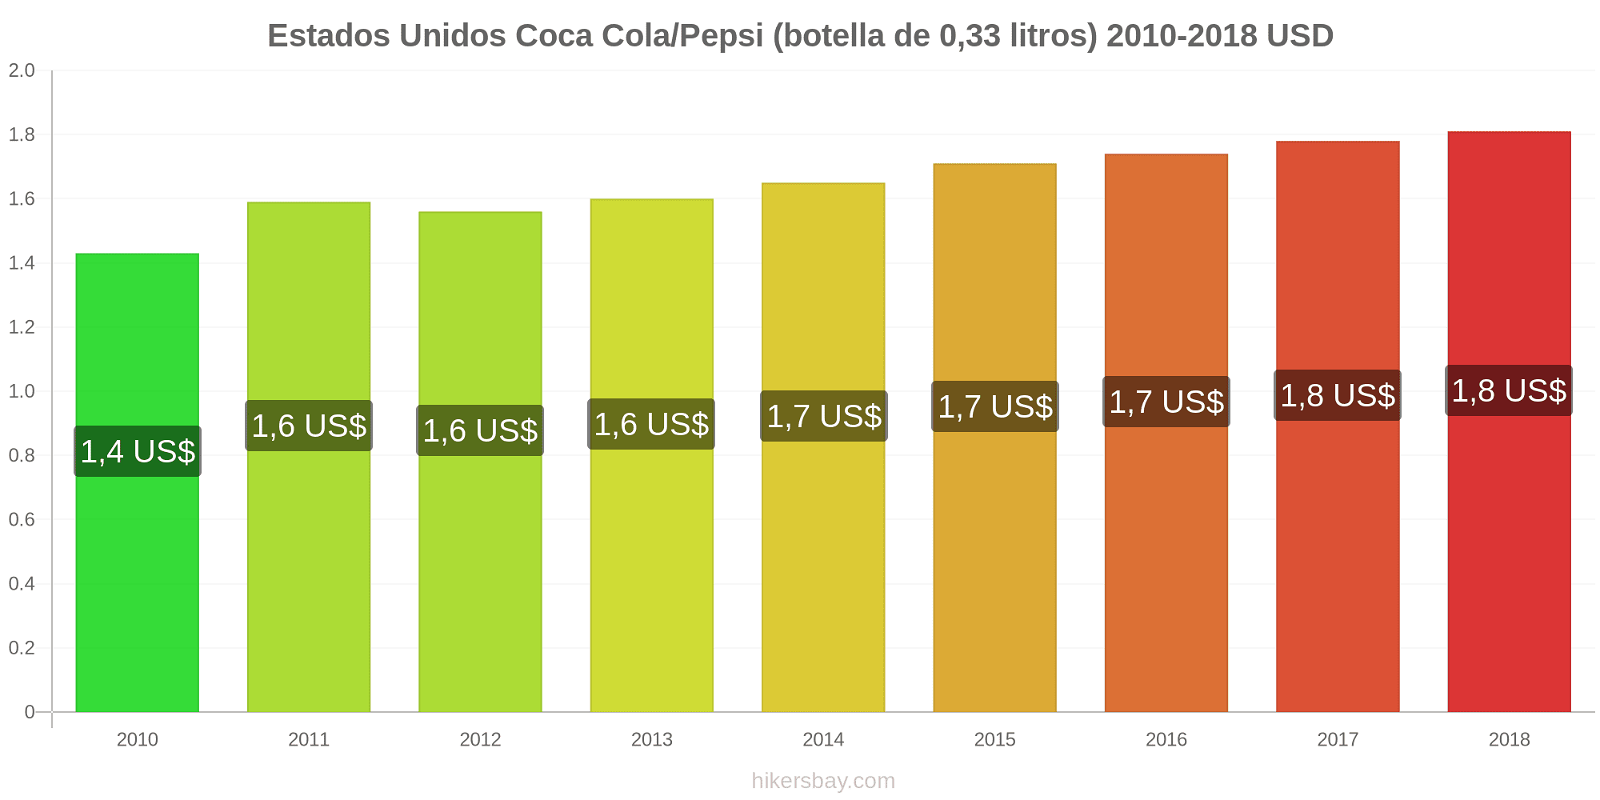 Estados Unidos cambios de precios Coca-Cola/Pepsi (botella de 0.33 litros) hikersbay.com